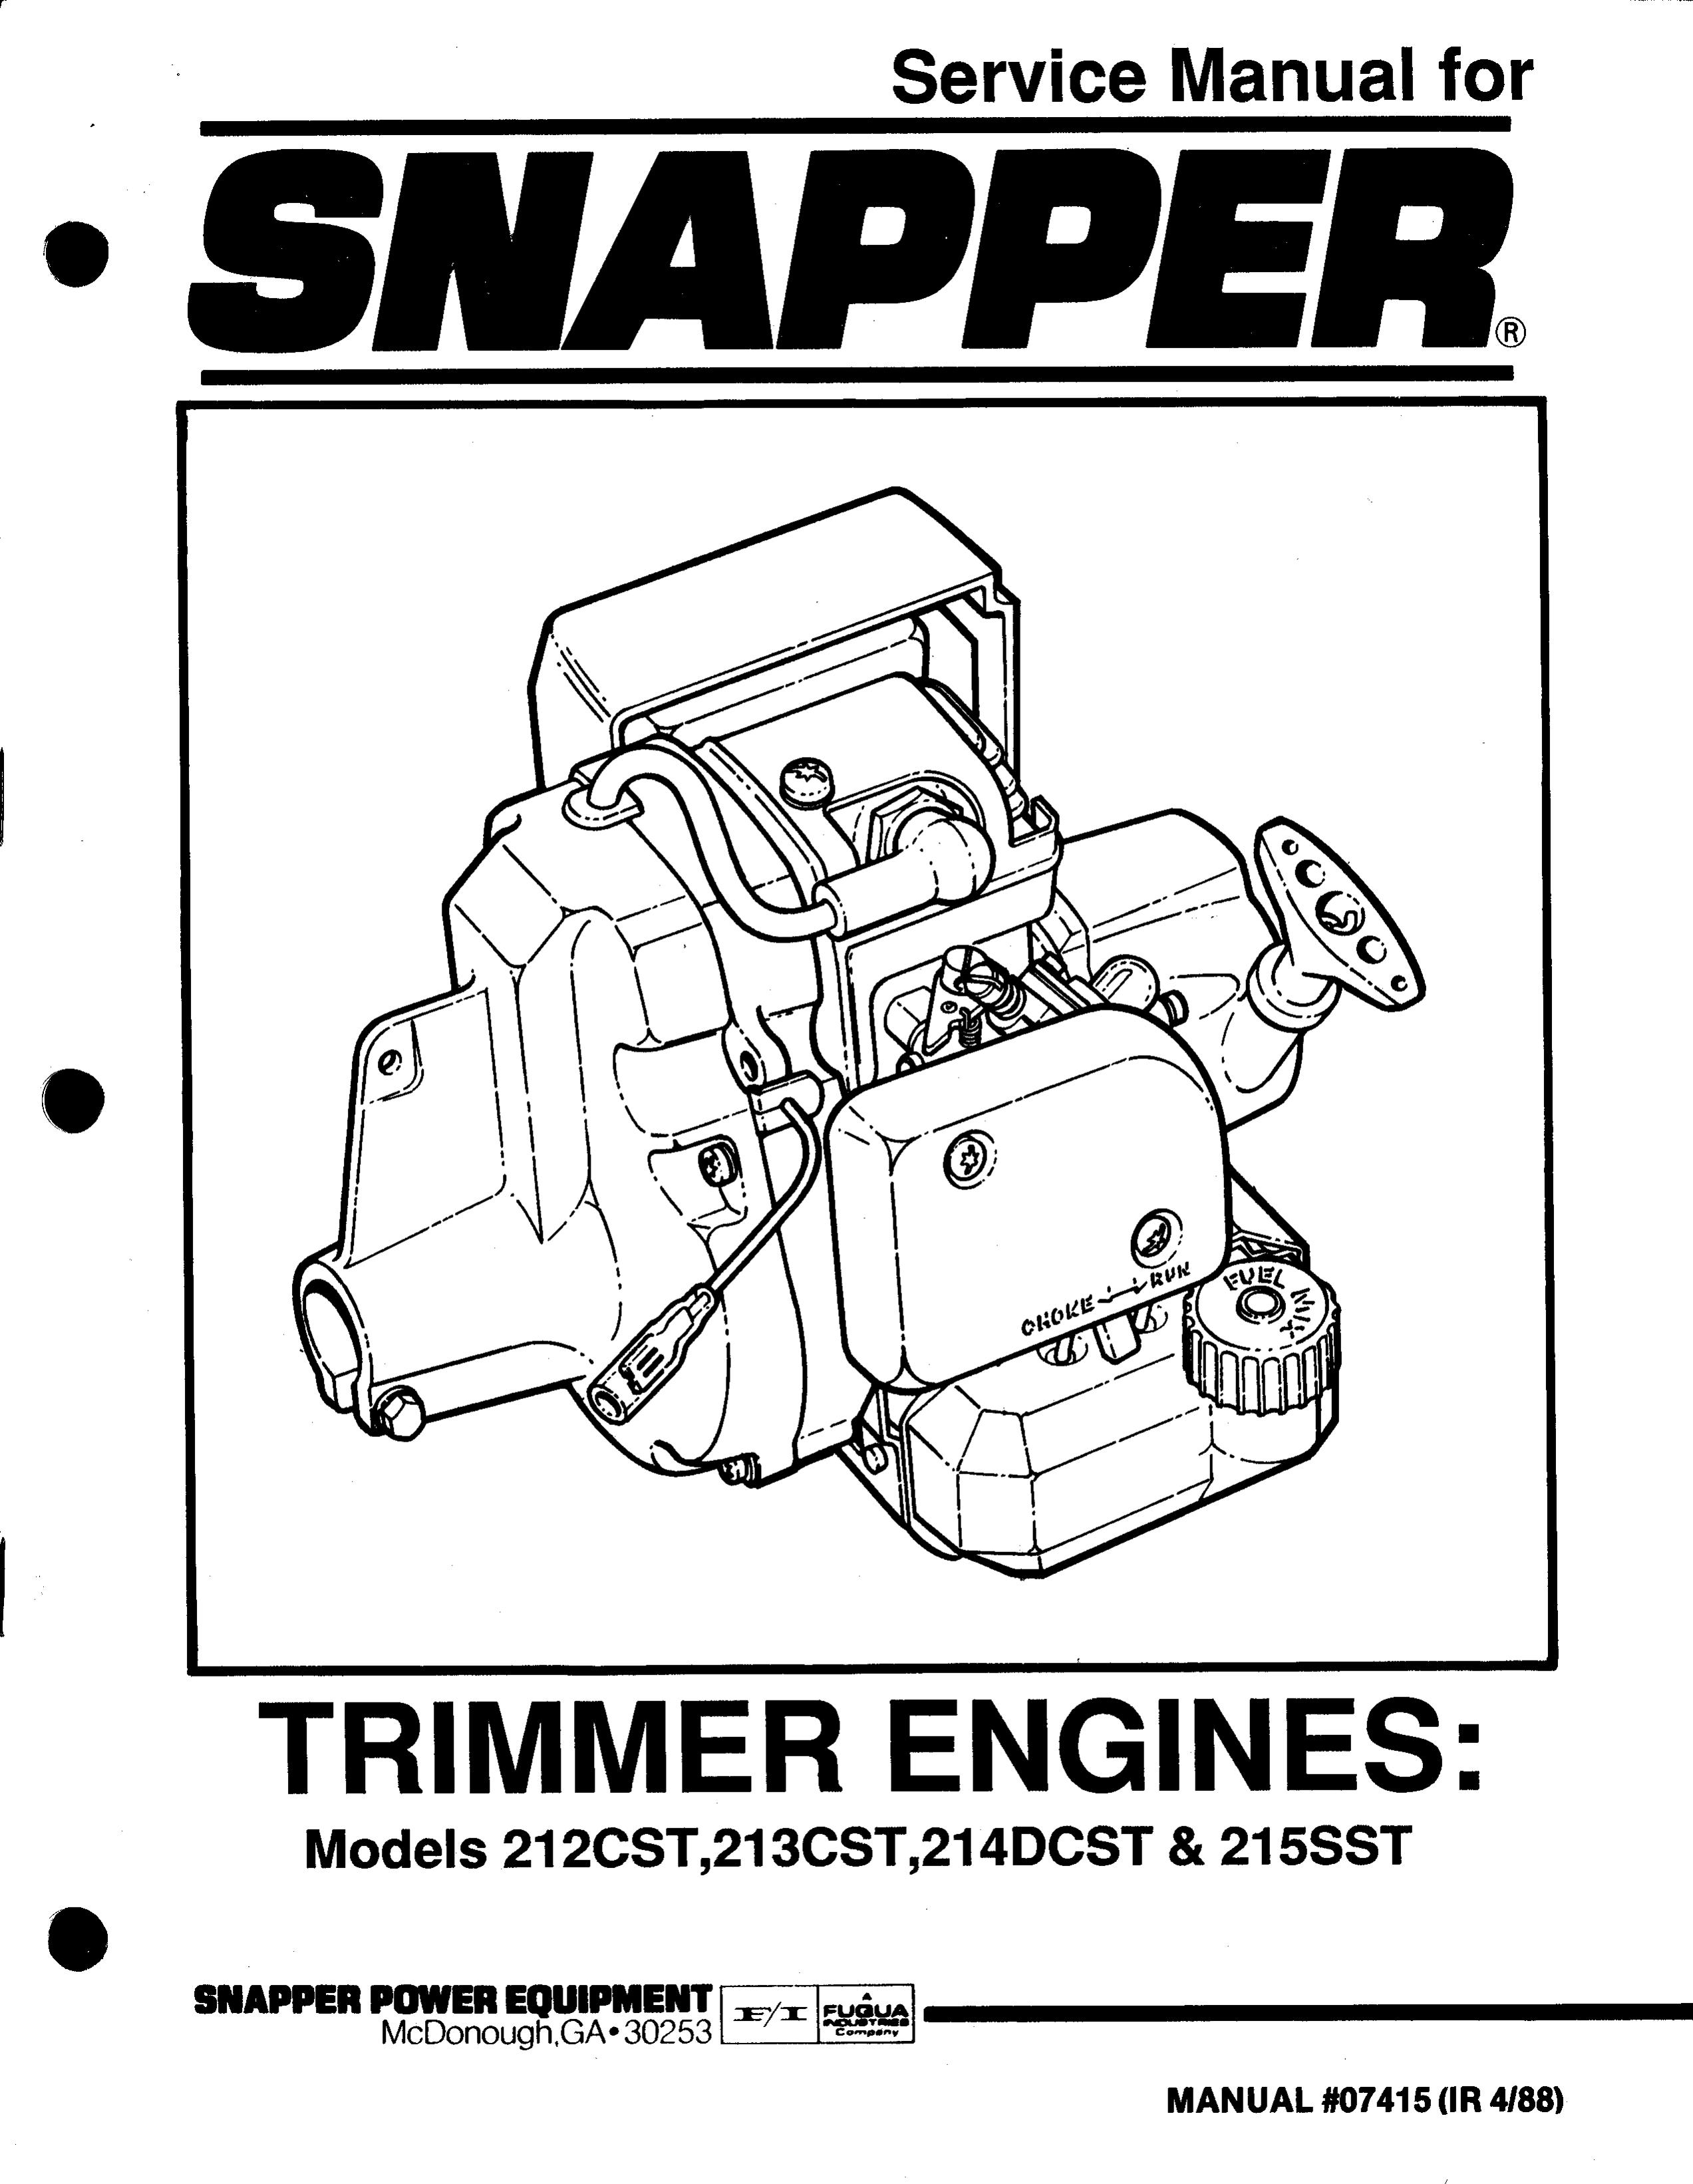 Snapper 215SST Trimmer User Manual